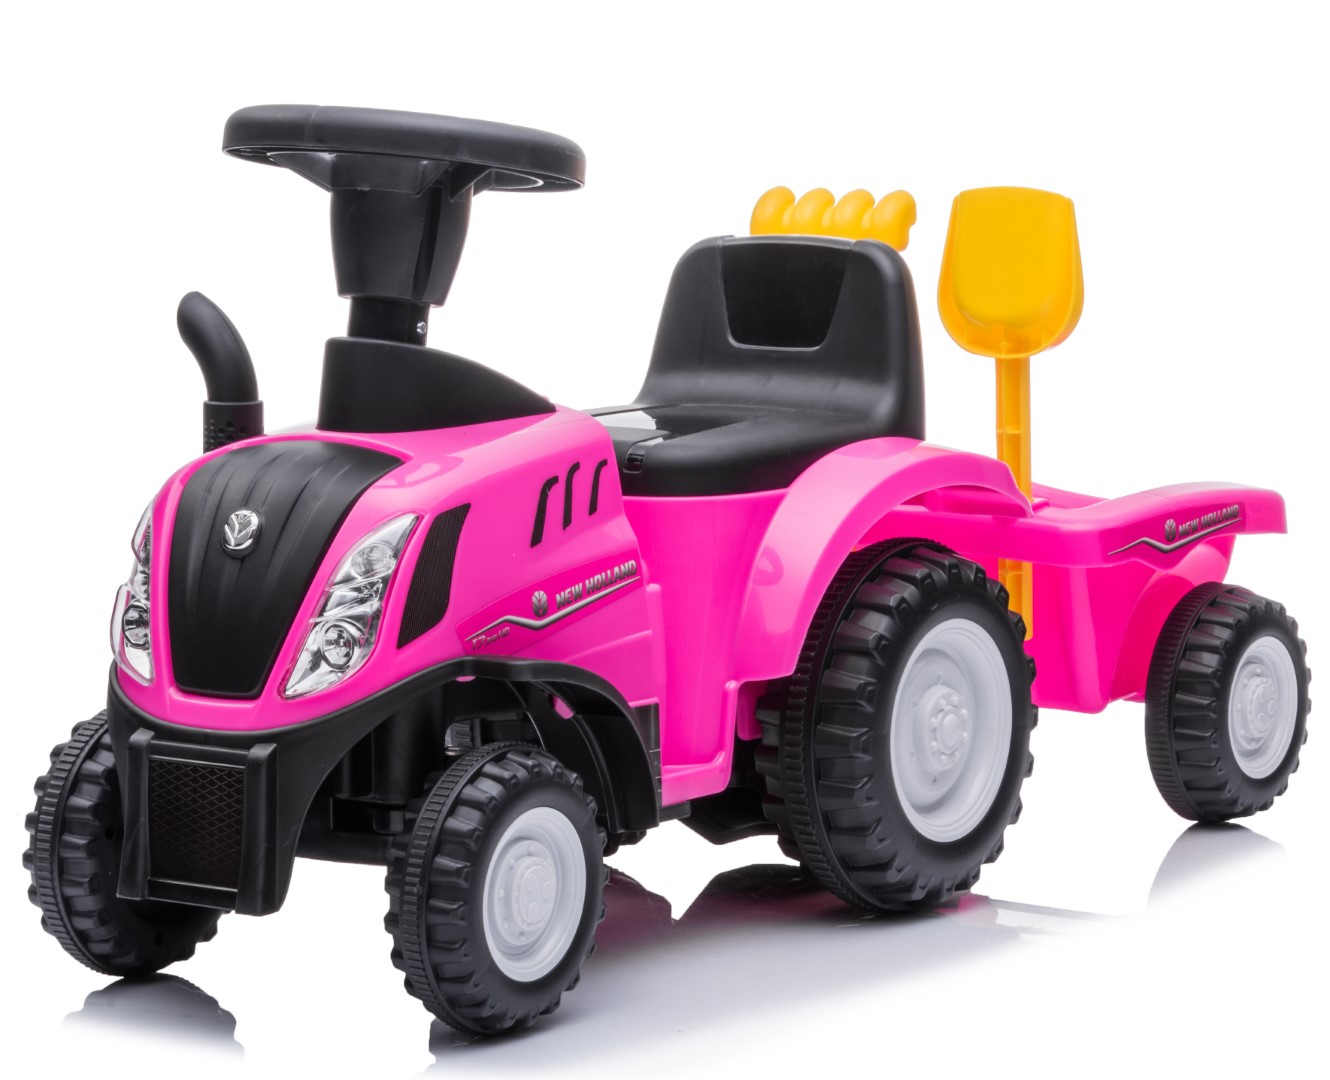 Se New Holland T7 Gå-Traktor med Trailer og værktøj, Pink hos MM Action